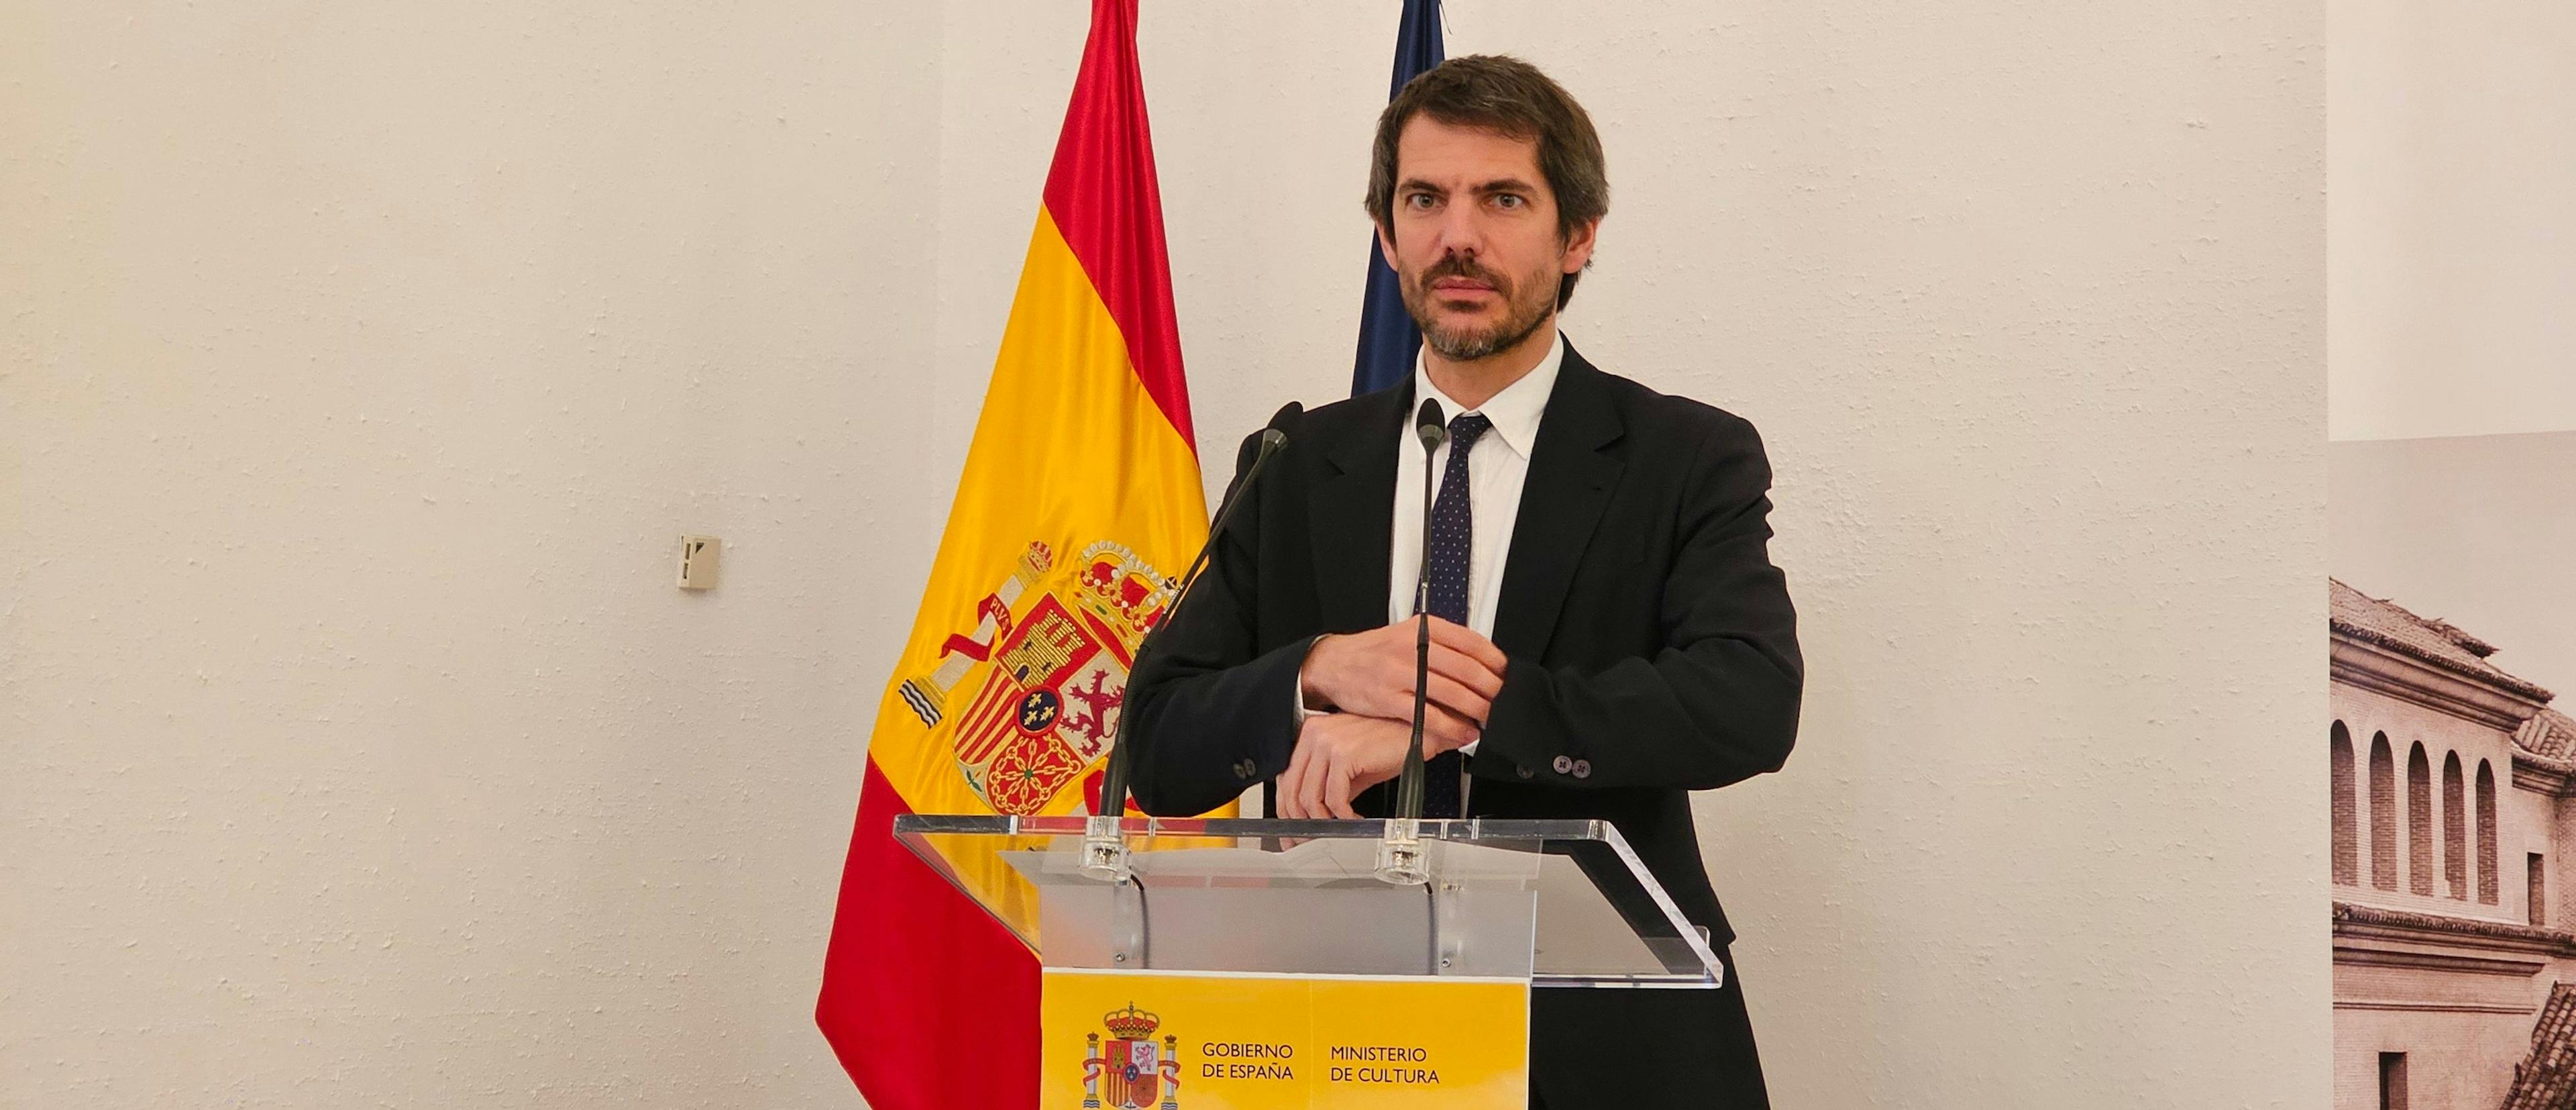 El ministro de Cultura, Ernest Urtasun, comparece ante la prensa en la sede de su ministerio en Madrid